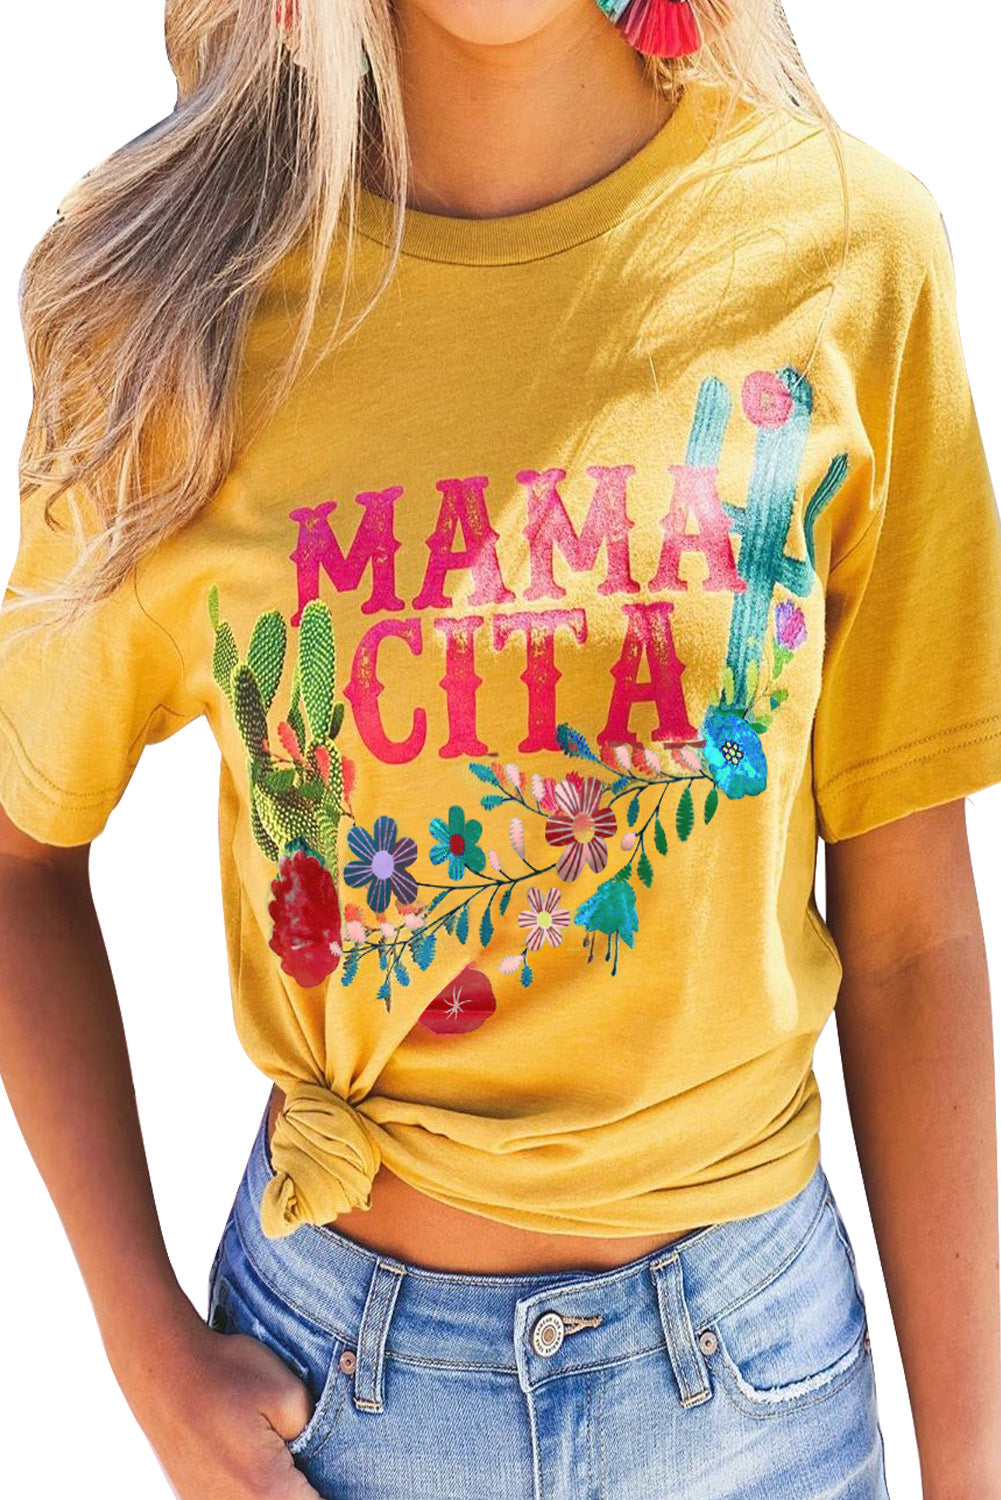 Mamacita con maglietta Cactus